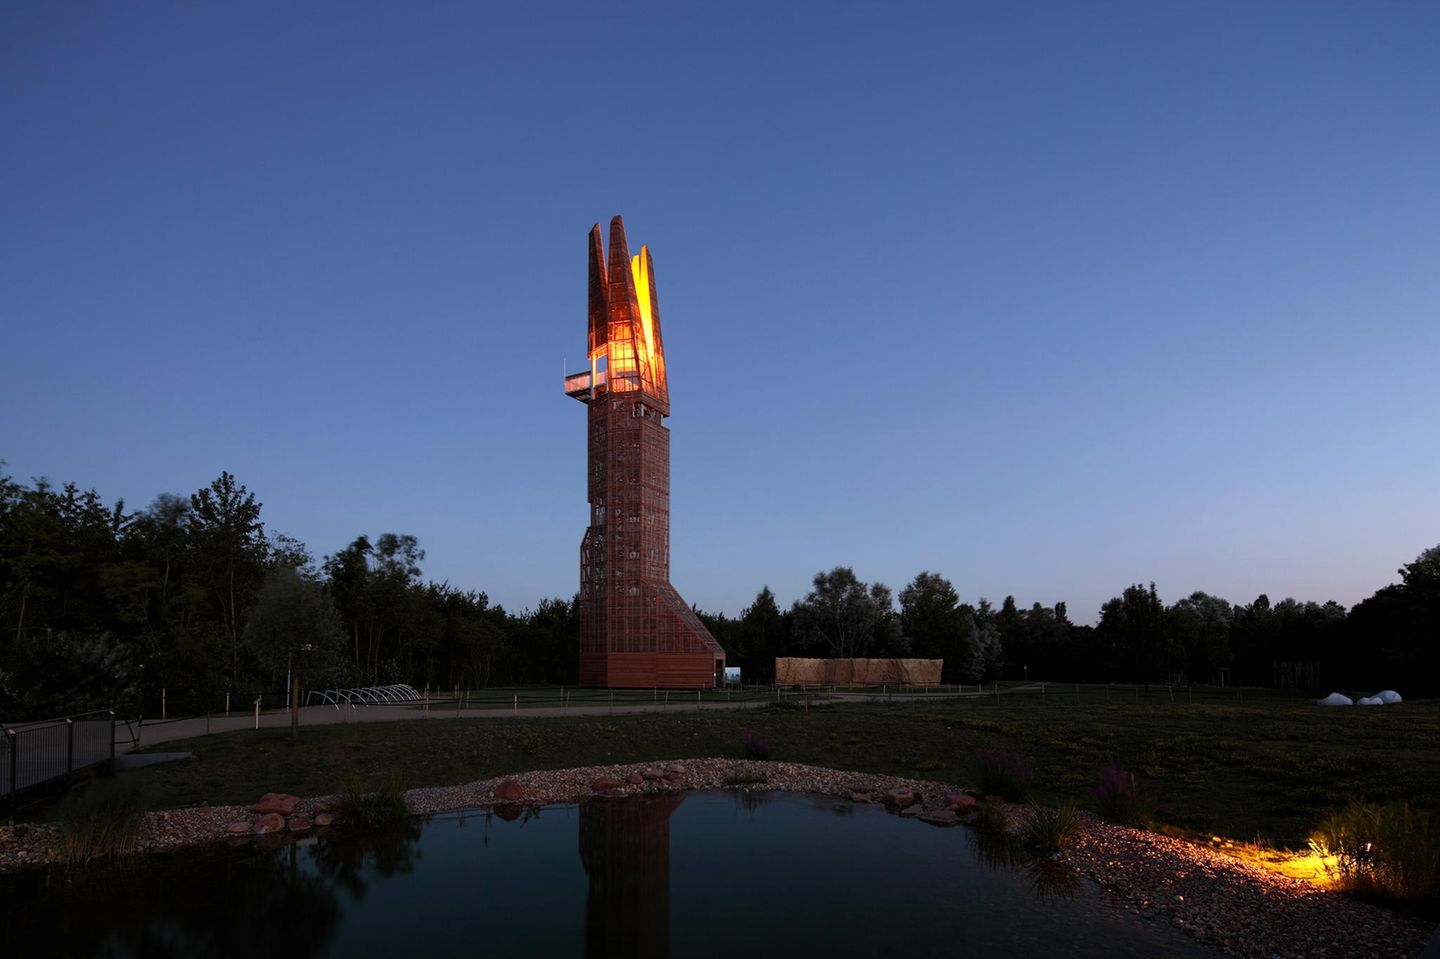 Der Turm steht in einer Abendstimmung am Waldrand, seine Spitze besteht aus vier Teilen, die beleuchtet sind.